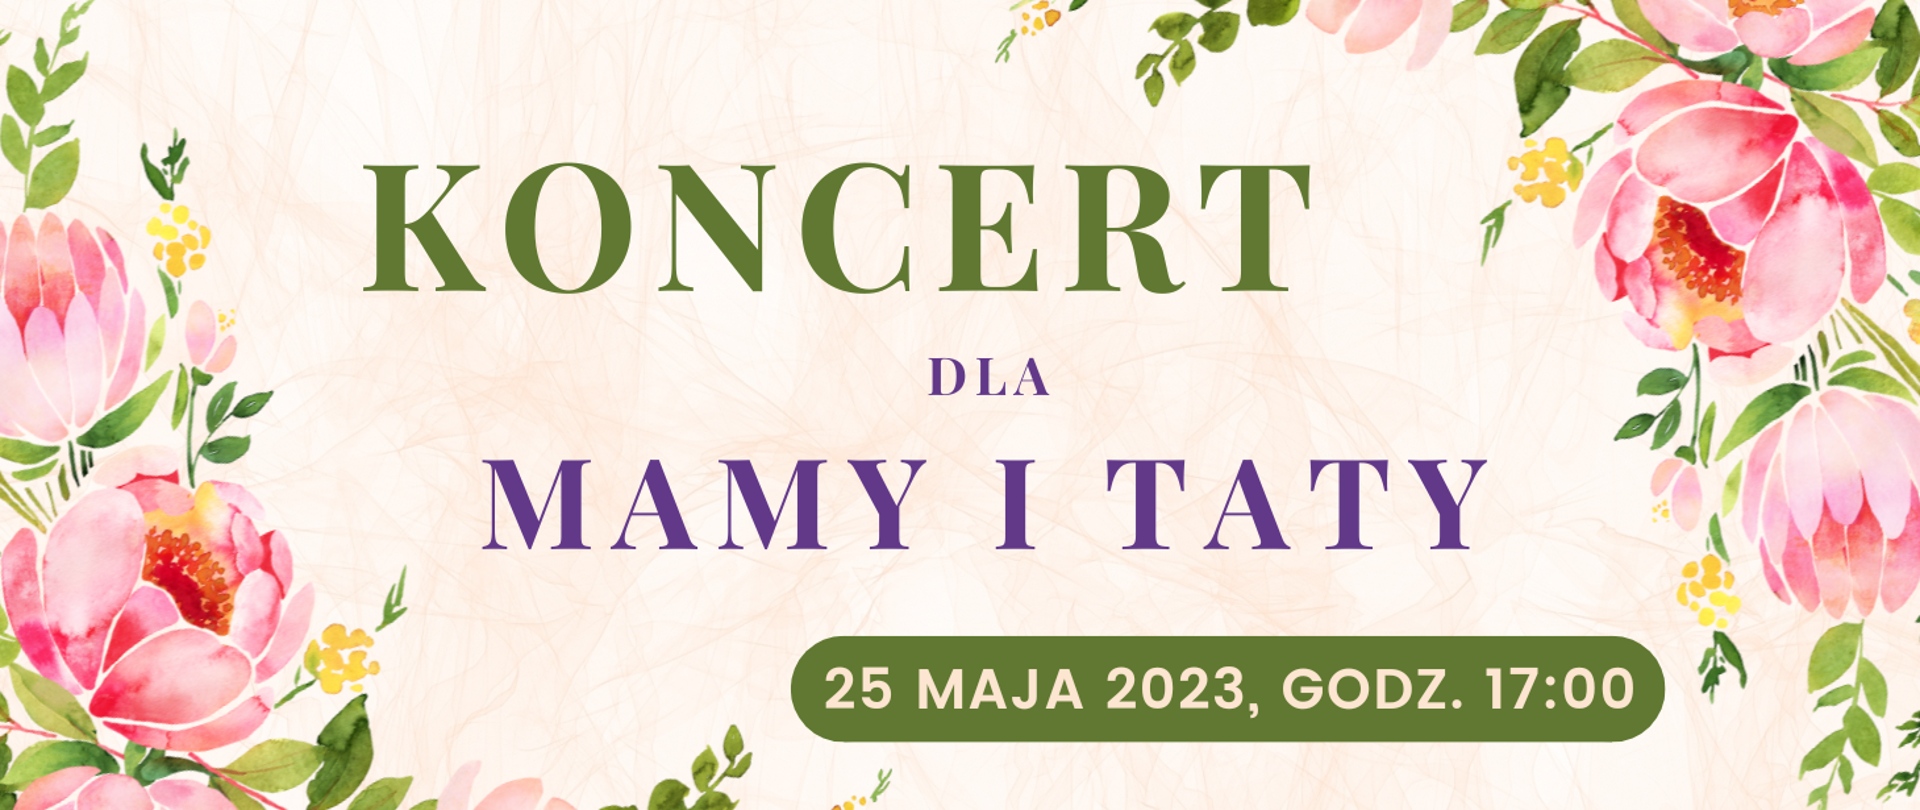 na jasnym tle w kwiatowej ramce napis w kolorach zielonym i fioletowym: Koncert dla Mamy i Taty, poniżej data i godzina wydarzenia